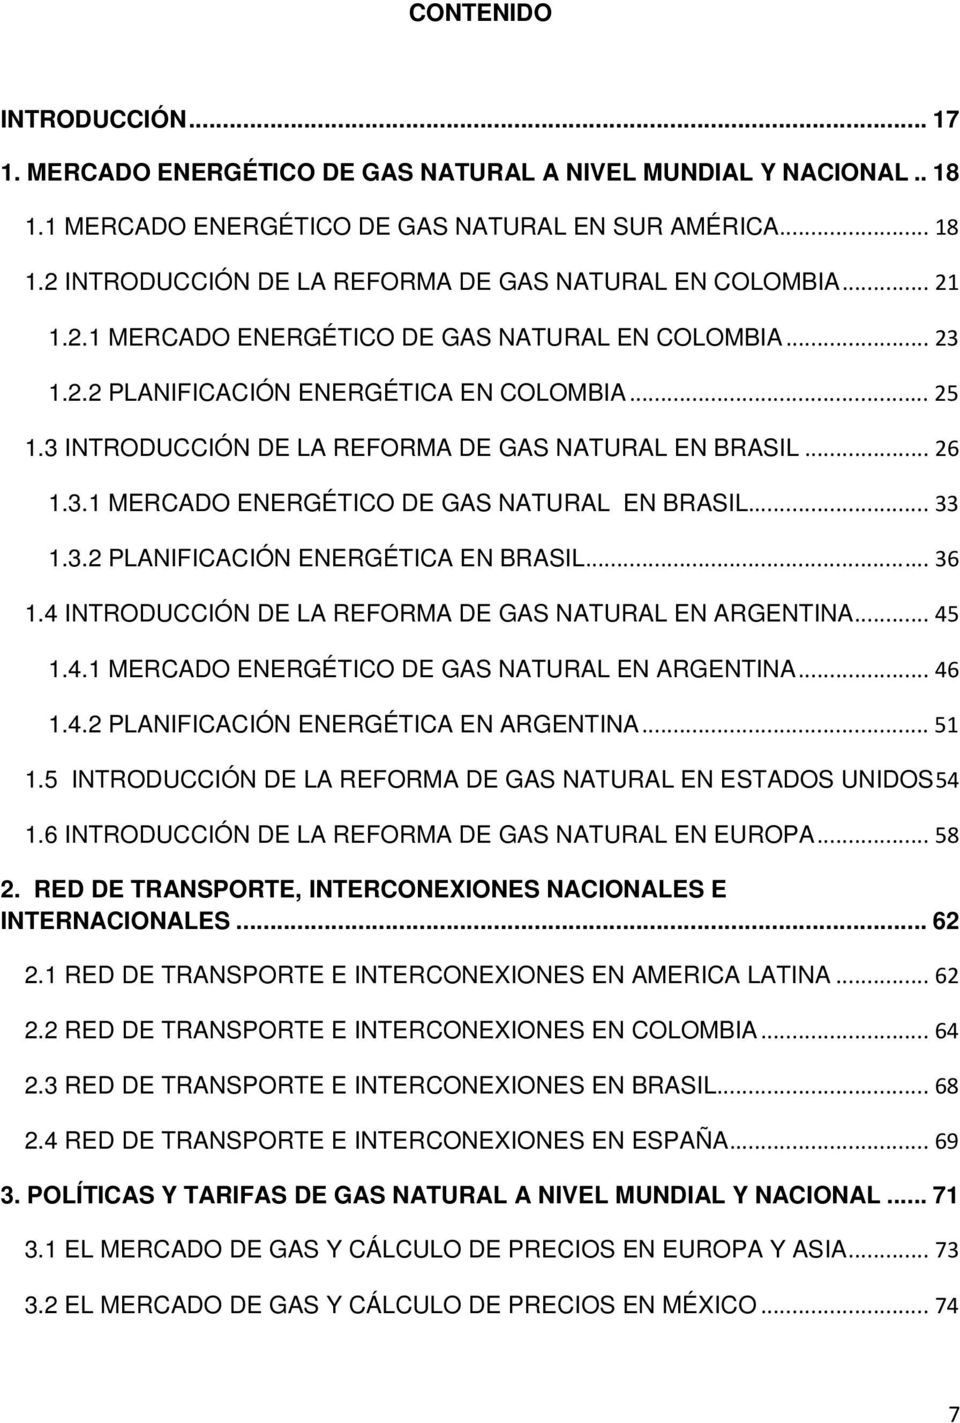 ..33 1.3.2 PLANIFICACIÓN ENERGÉTICA EN BRASIL...36 1.4 INTRODUCCIÓN DE LA REFORMA DE GAS NATURAL EN ARGENTINA...45 1.4.1 MERCADO ENERGÉTICO DE GAS NATURAL EN ARGENTINA...46 1.4.2 PLANIFICACIÓN ENERGÉTICA EN ARGENTINA.